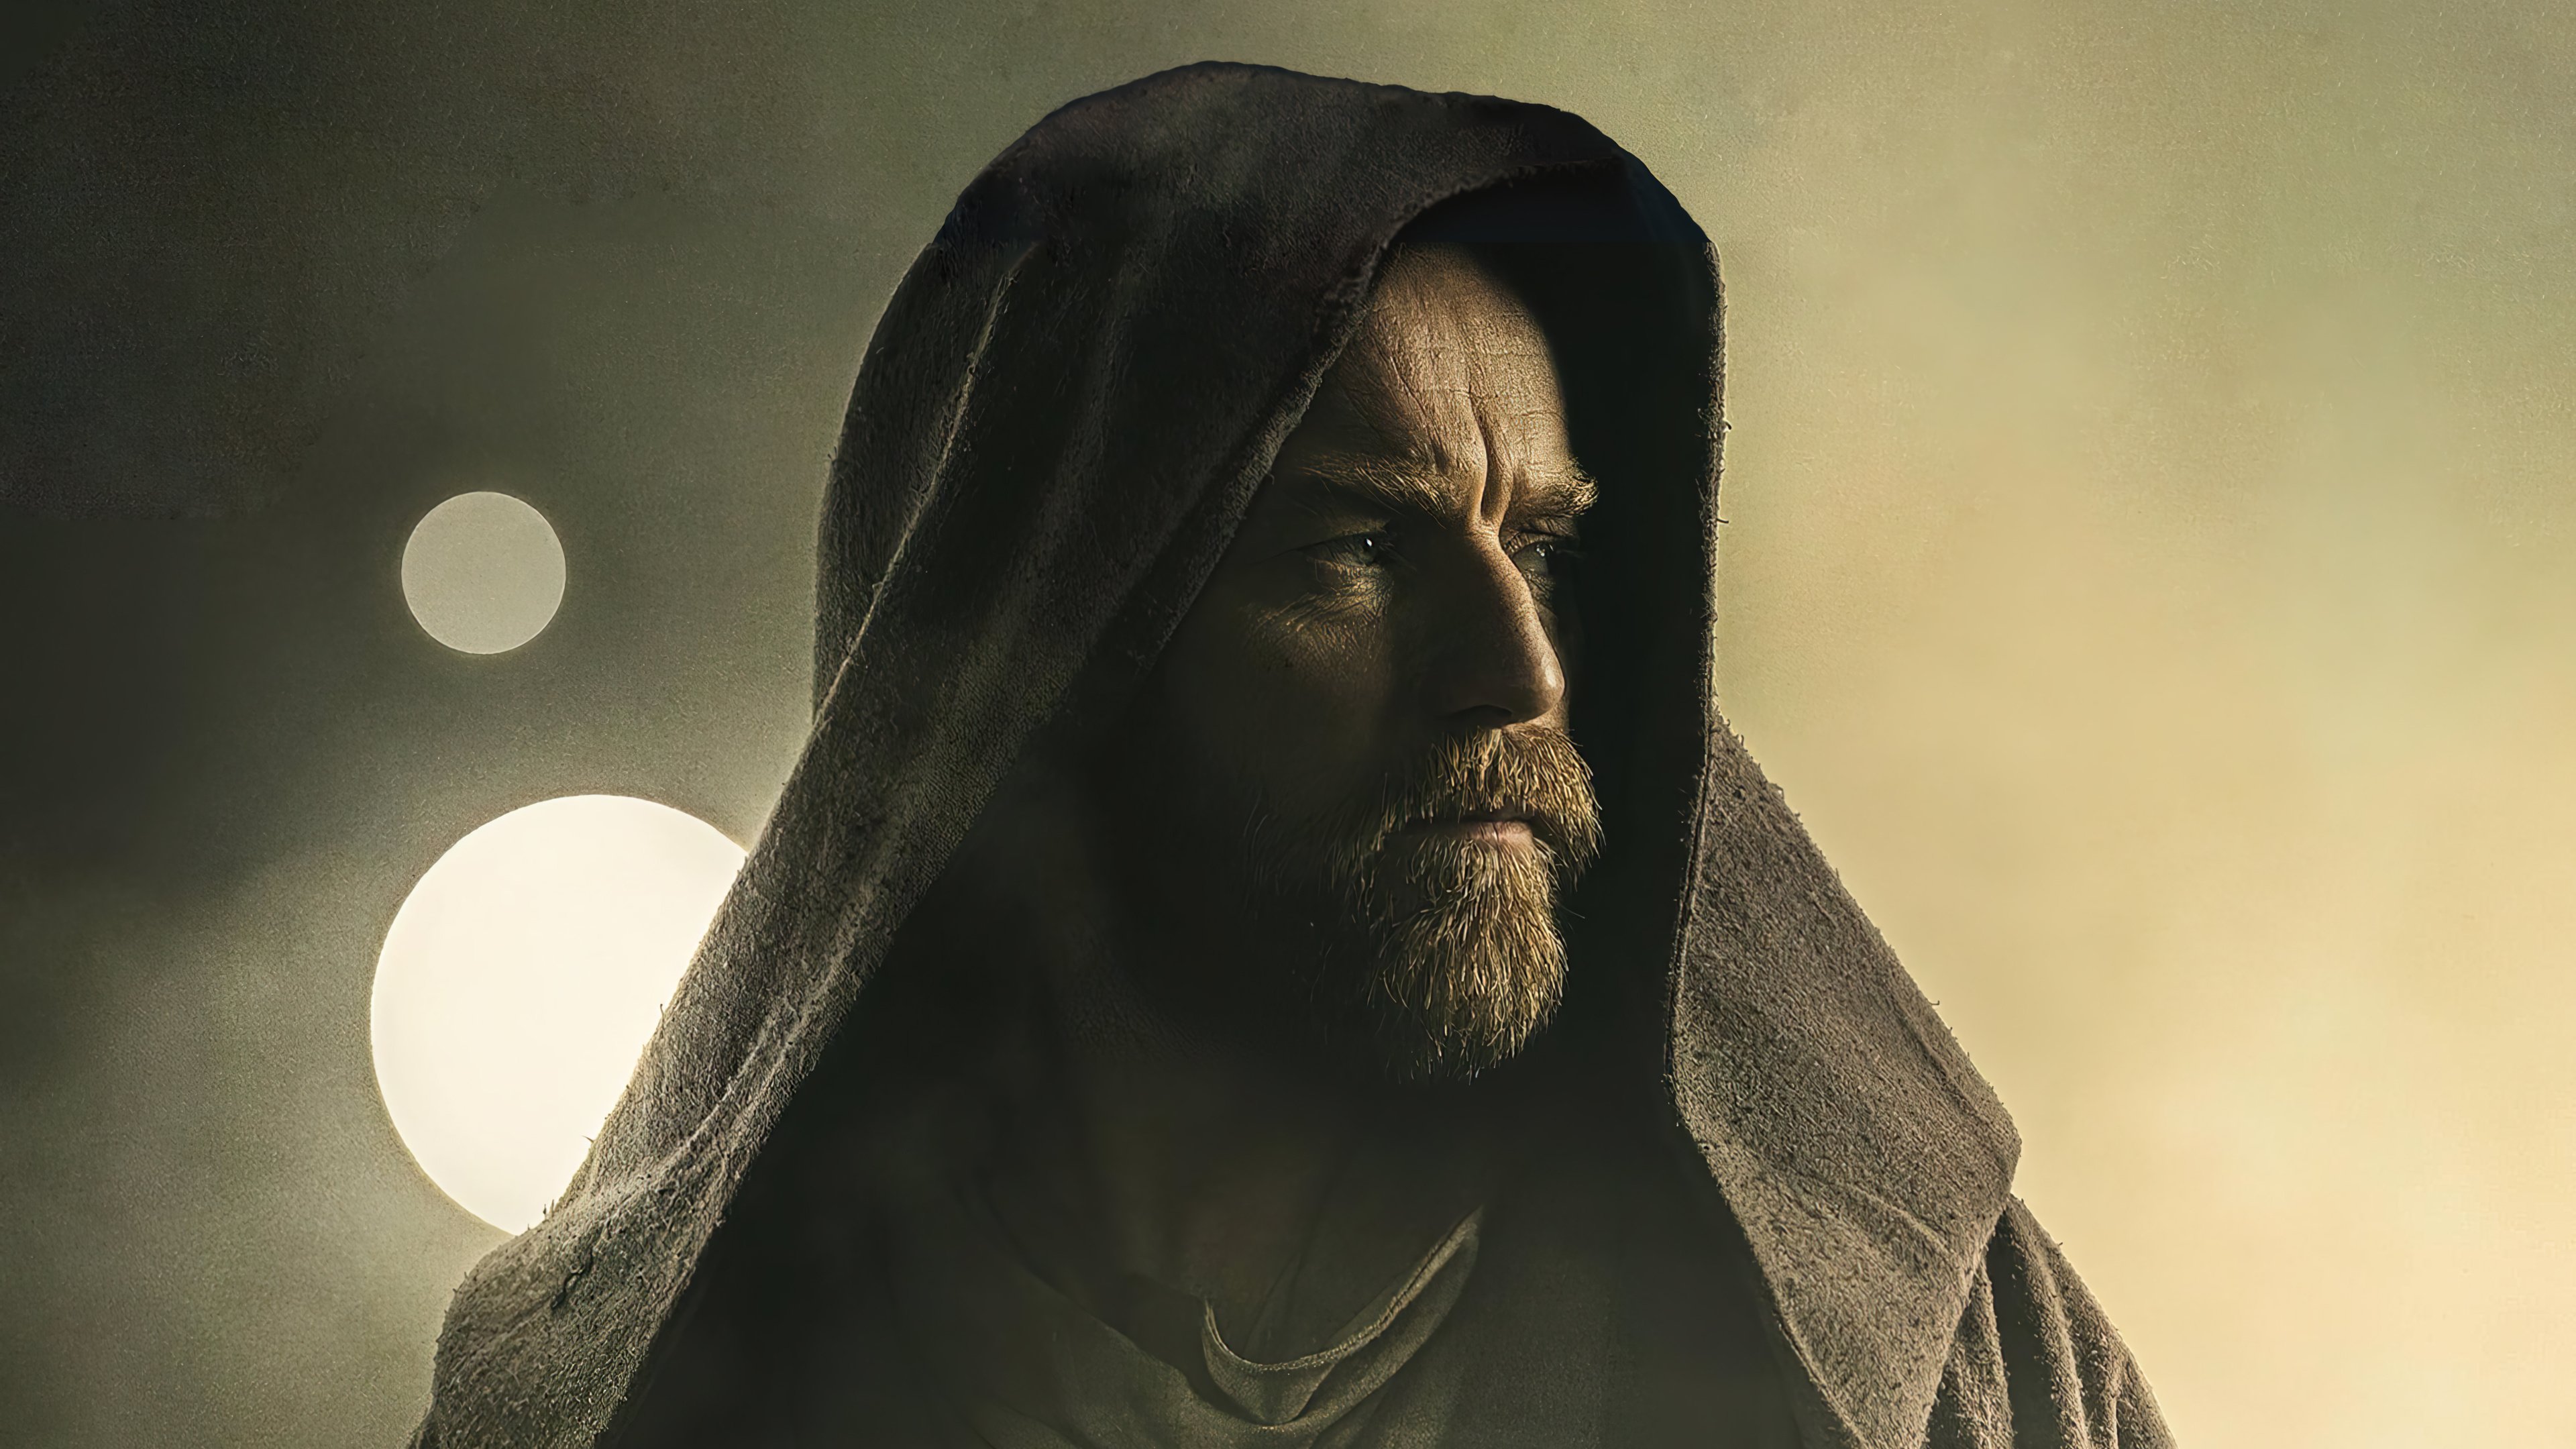 Wallpaper Obi Wan Kenobi Series